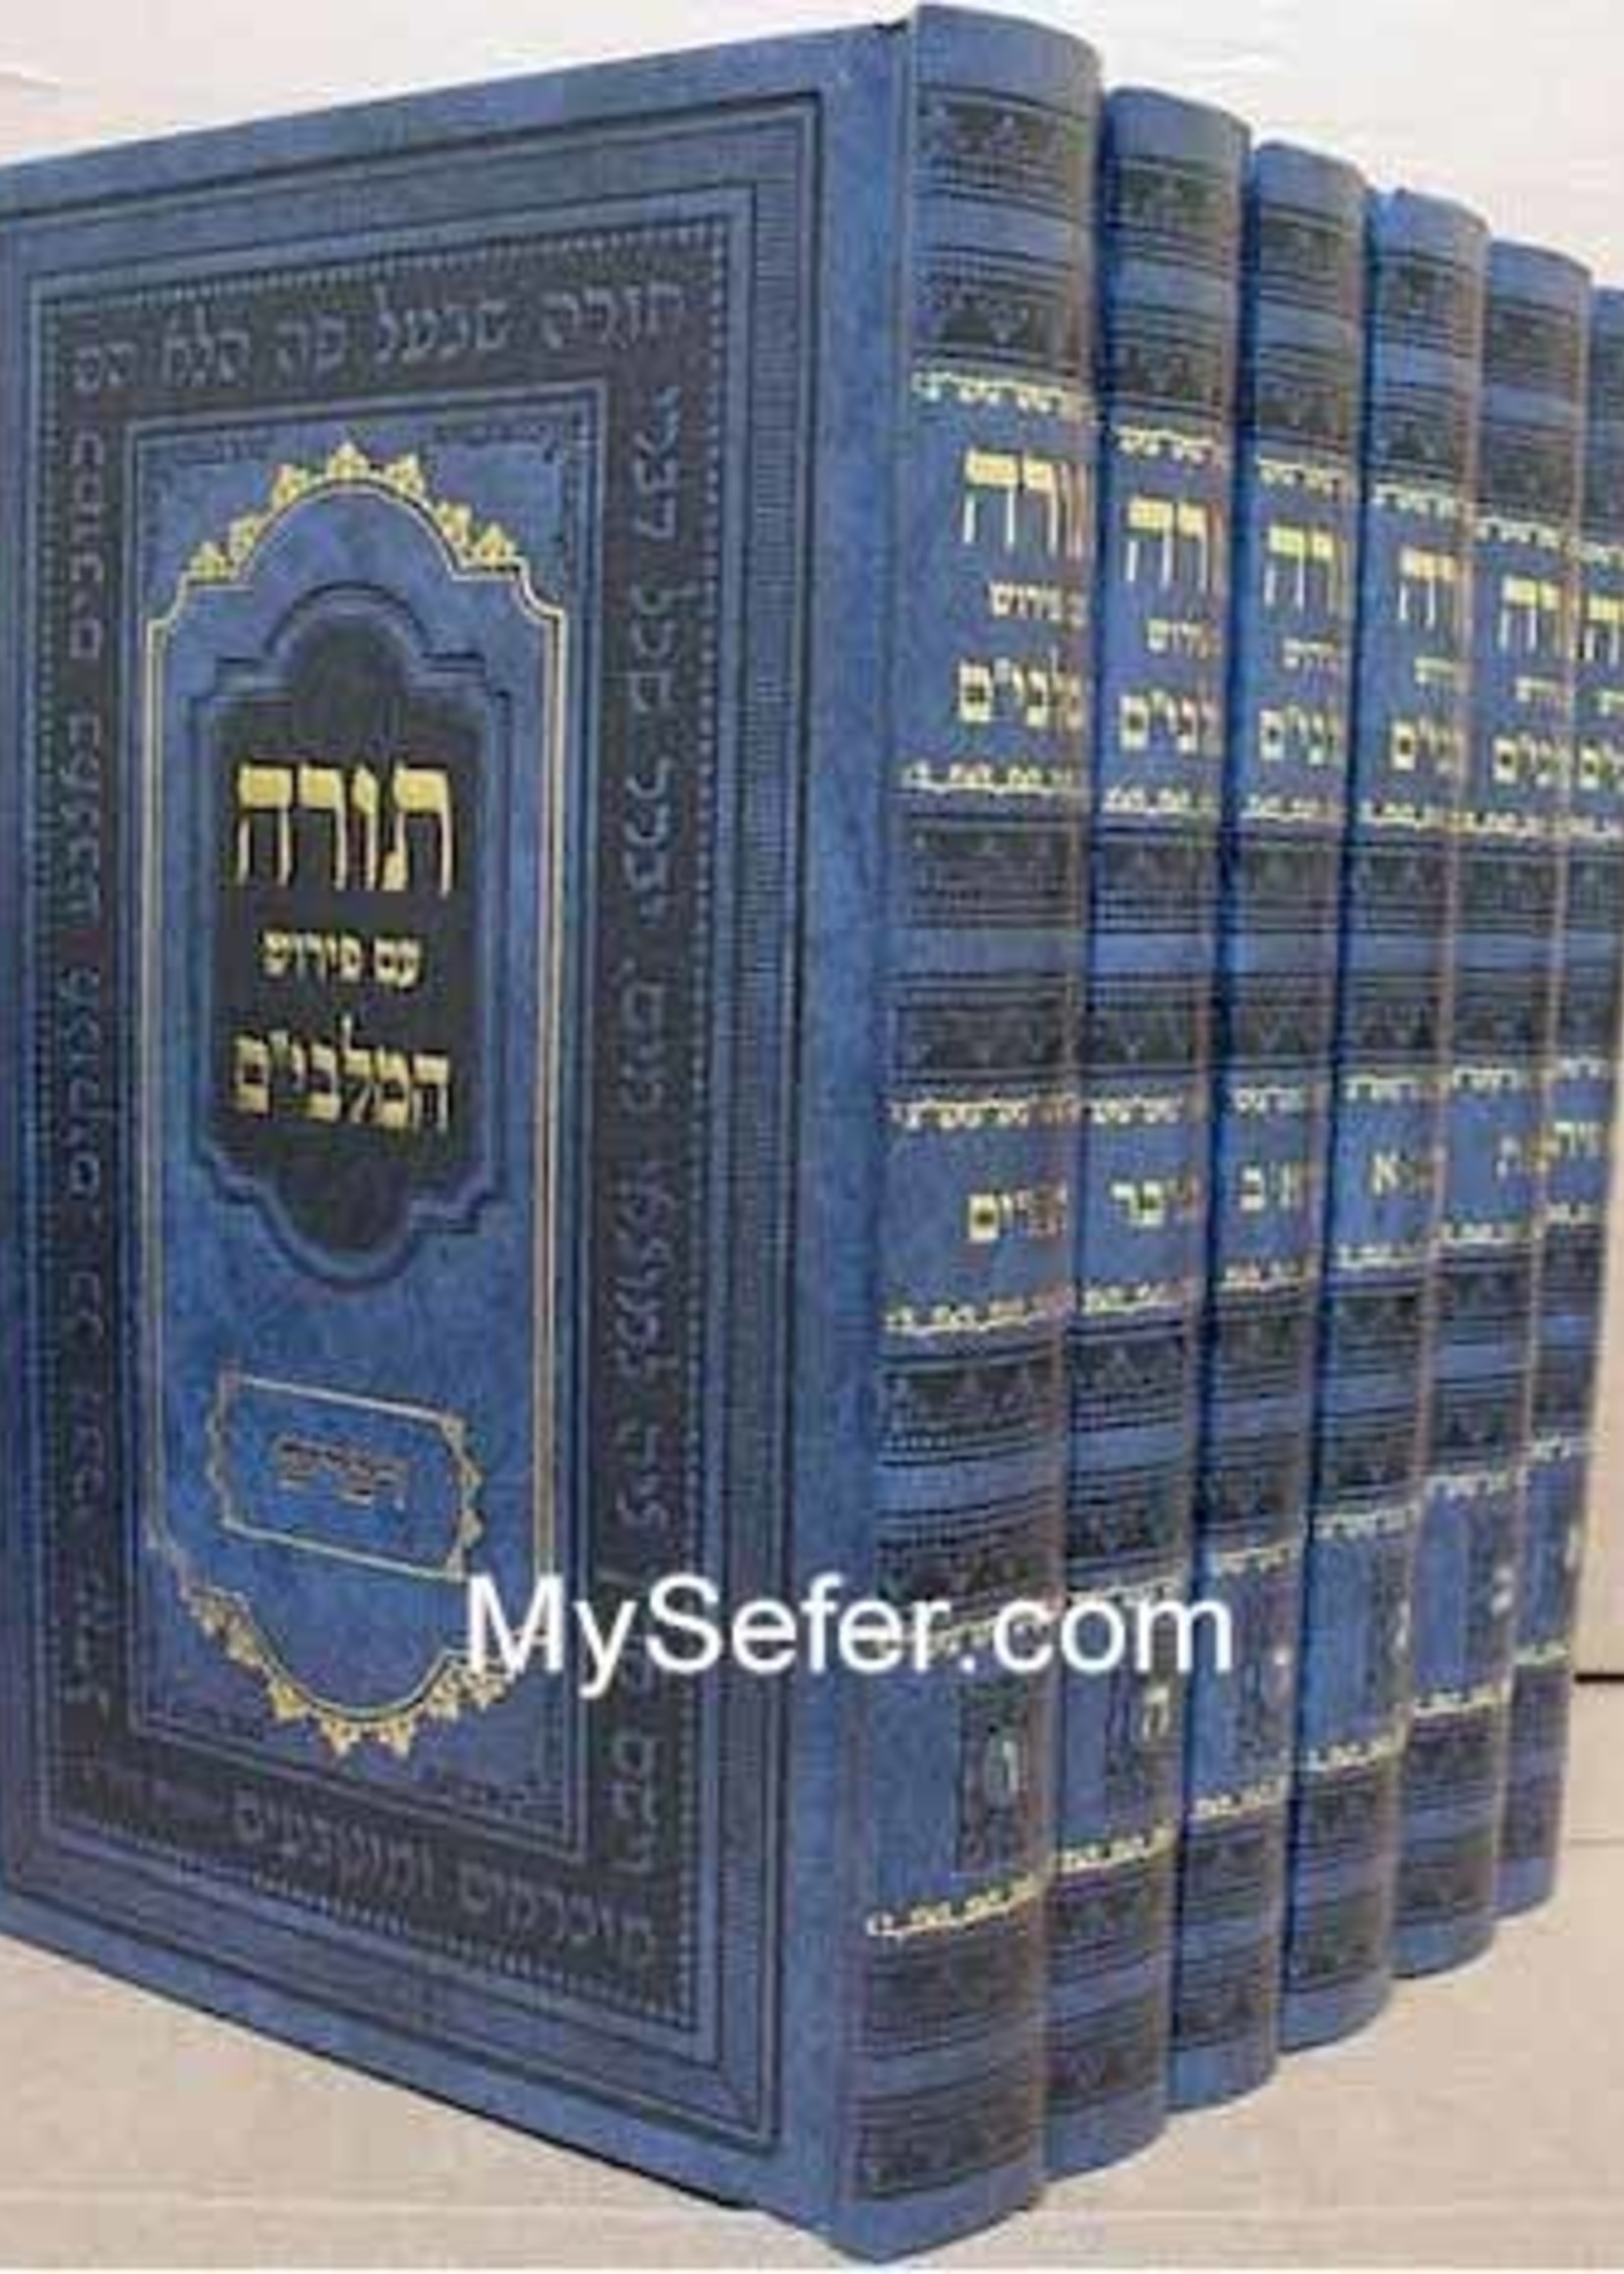 Torah - Peirush Malbim (6 vol.) [medium size] /חומש פירוש מלבים 6 כרכים - בינוני